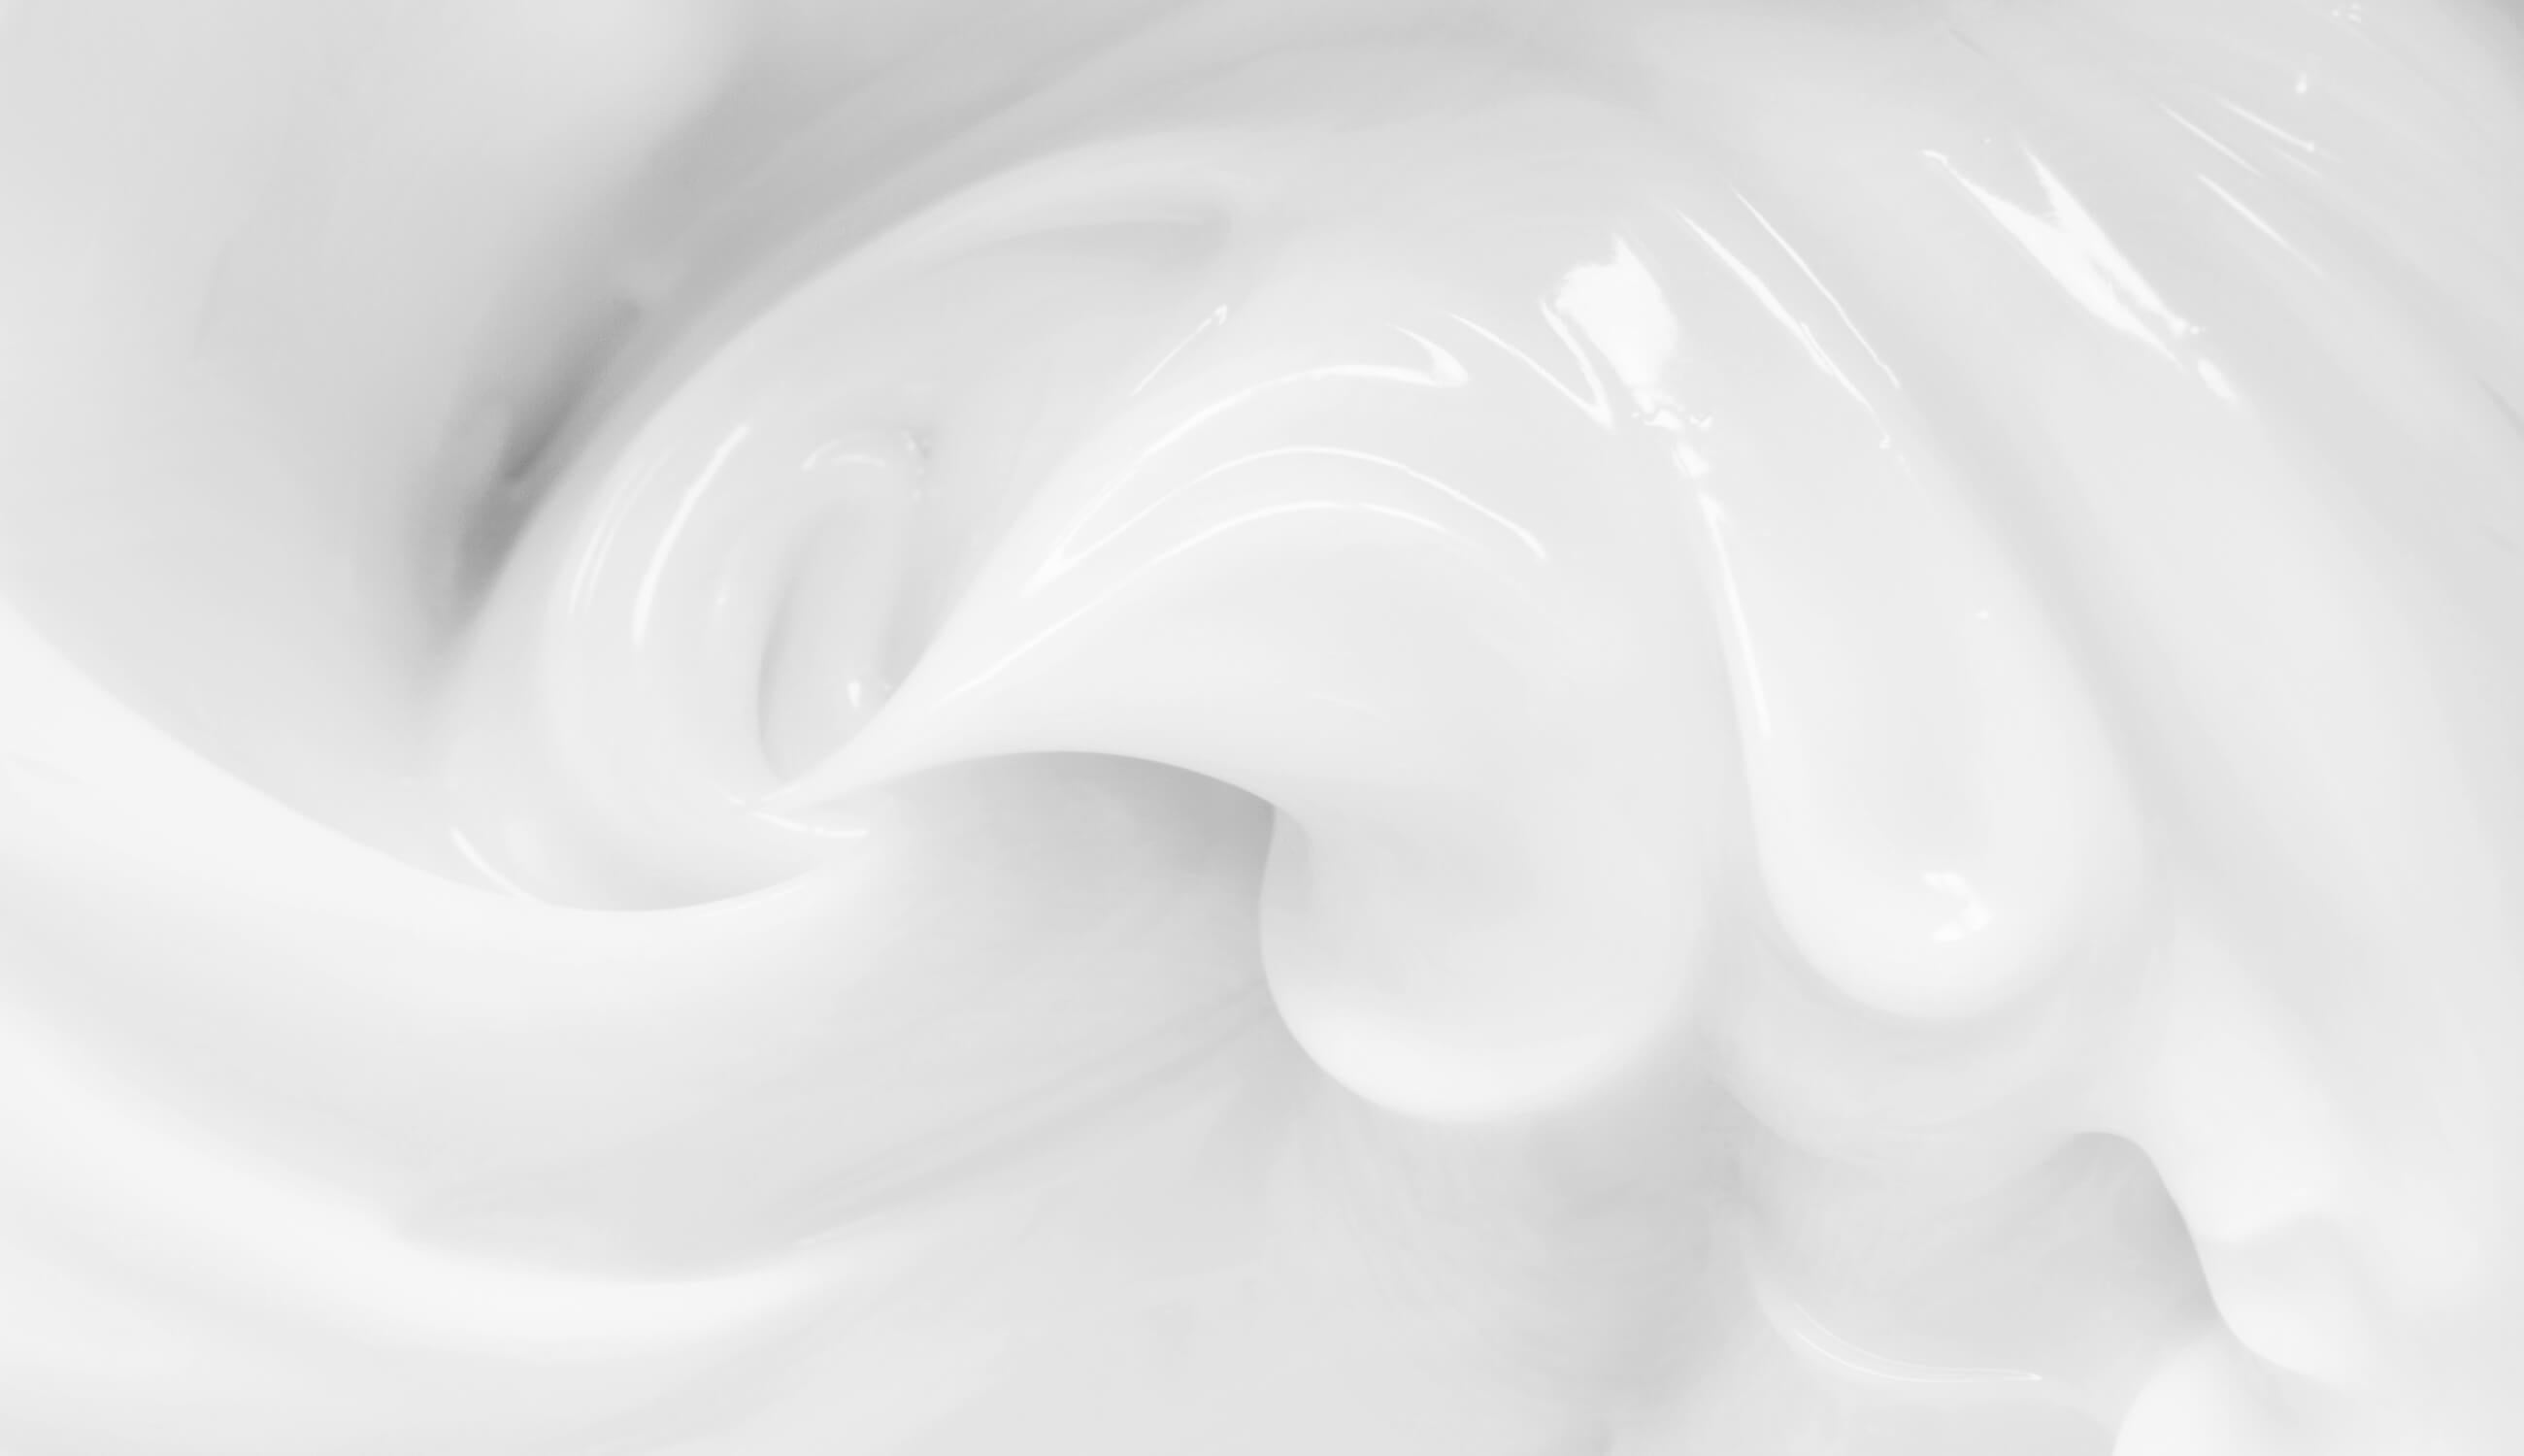 Cream texture